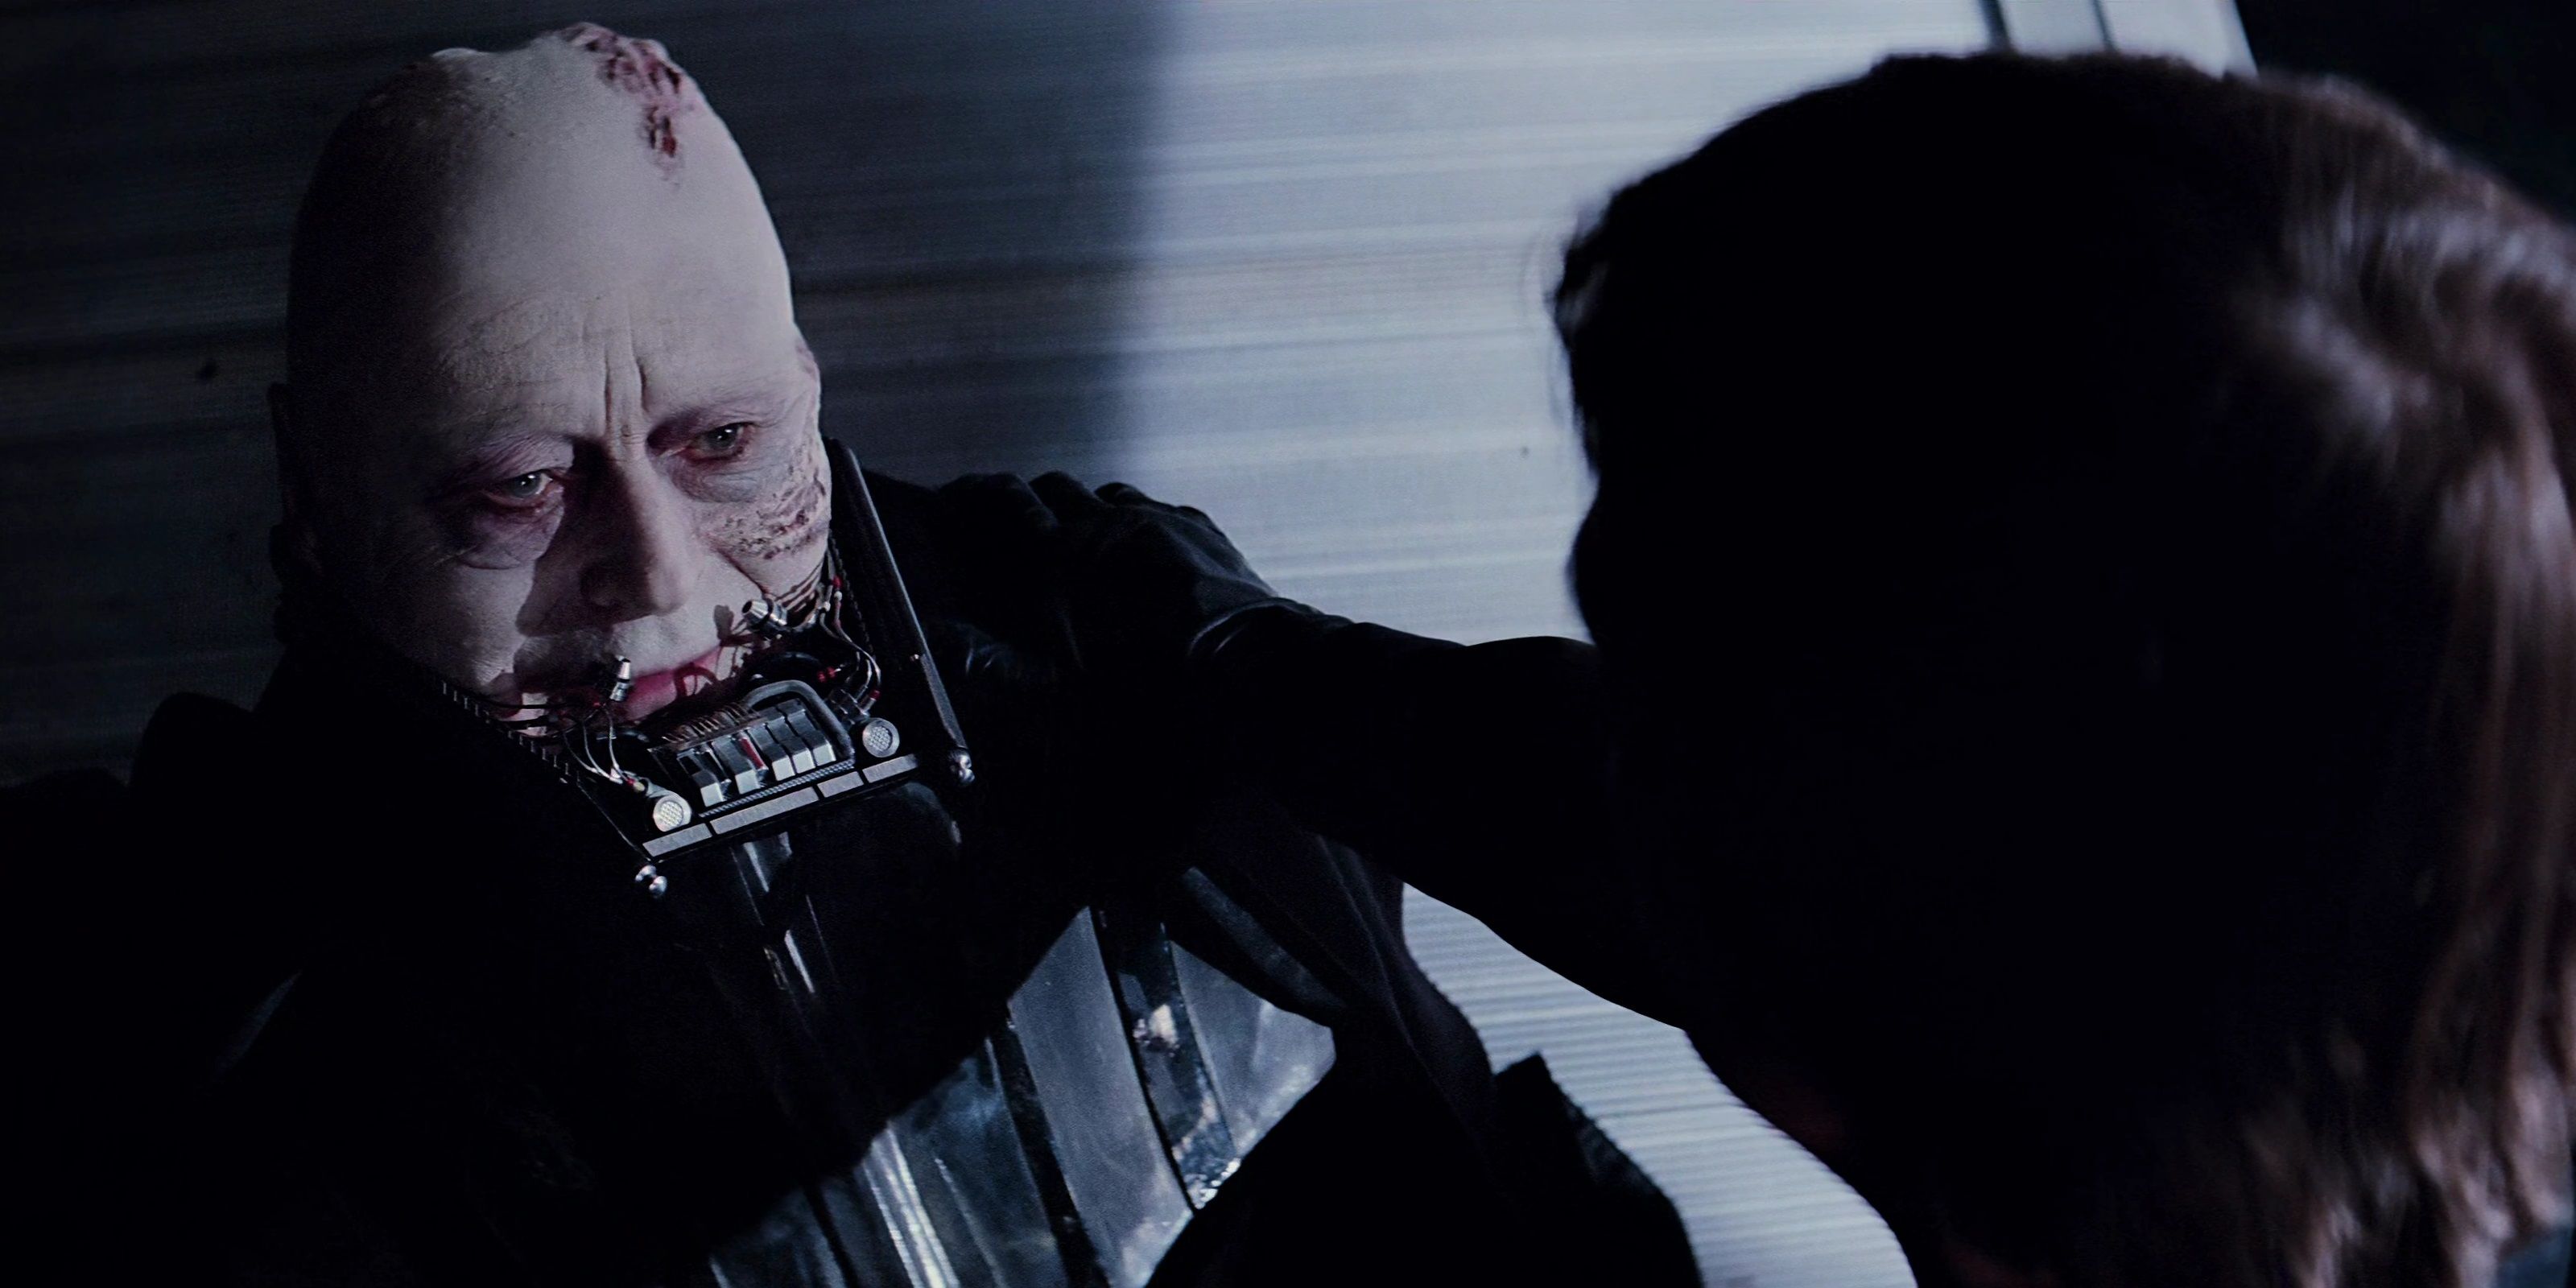 Darth Vader dies in Luke's arms in Return of the Jedi